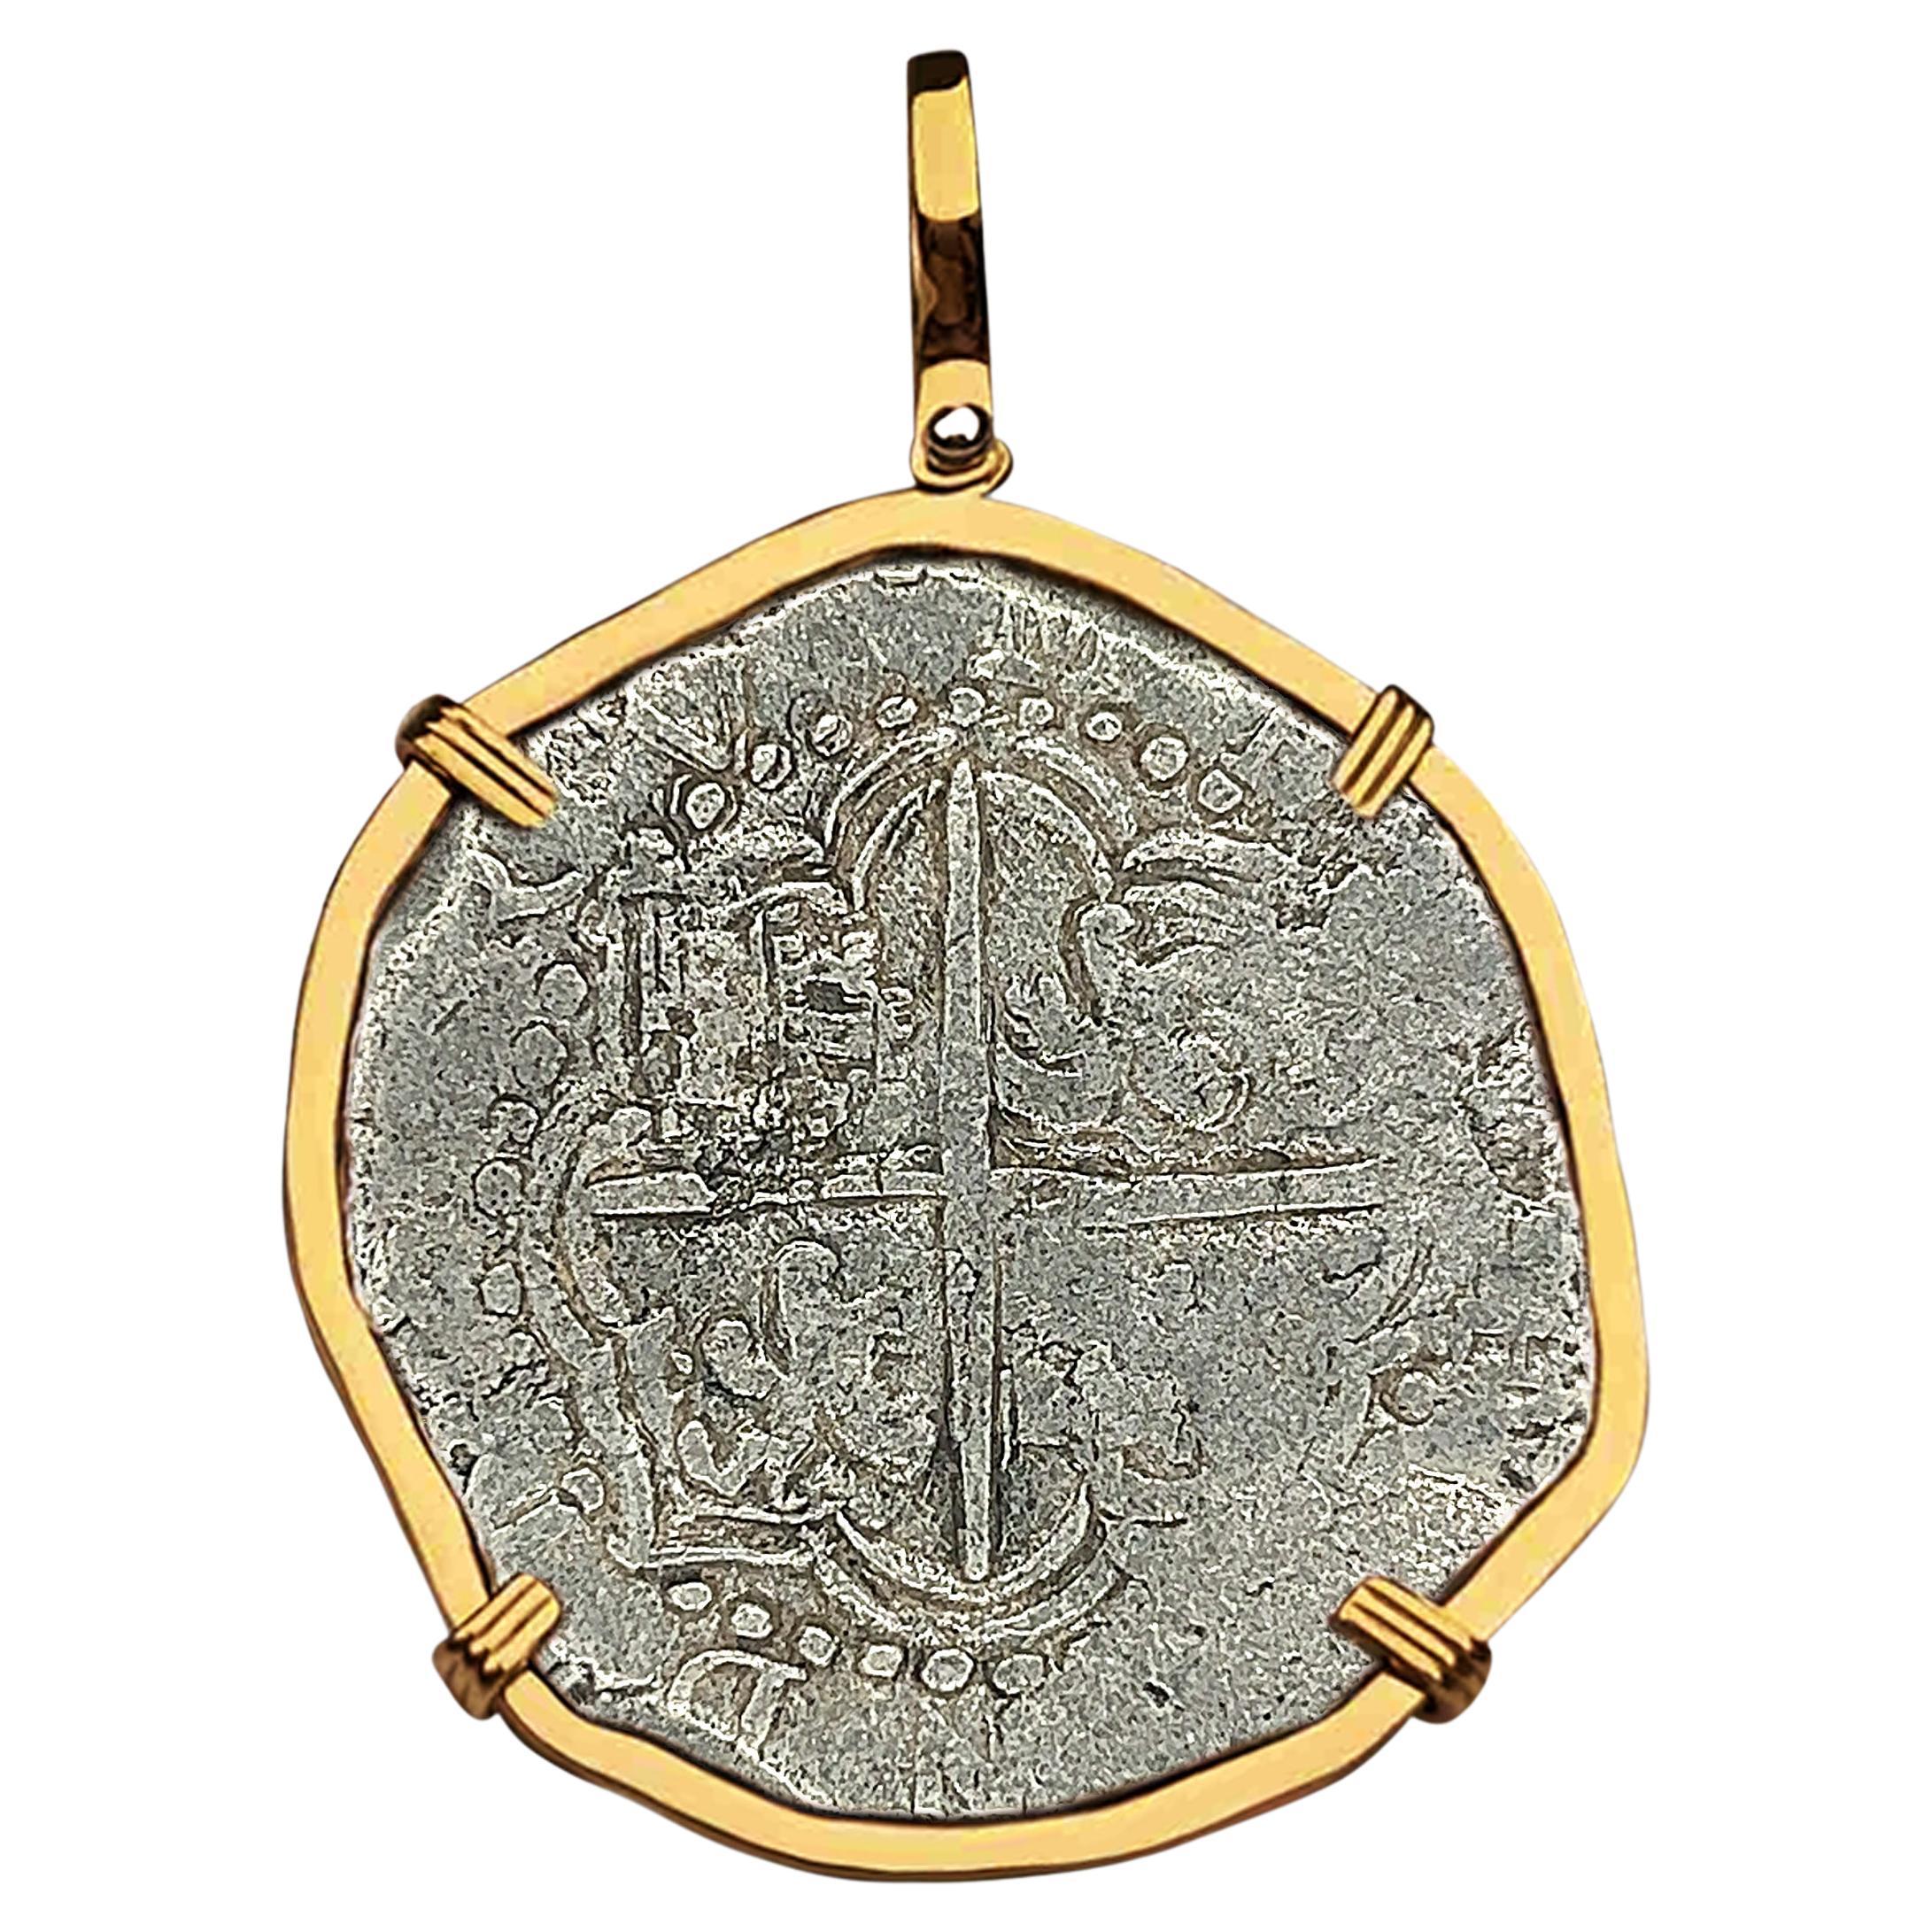 Atocha Shipwreck 8 Reale Grade 2 Potosi pièce de monnaie et pendentif en or